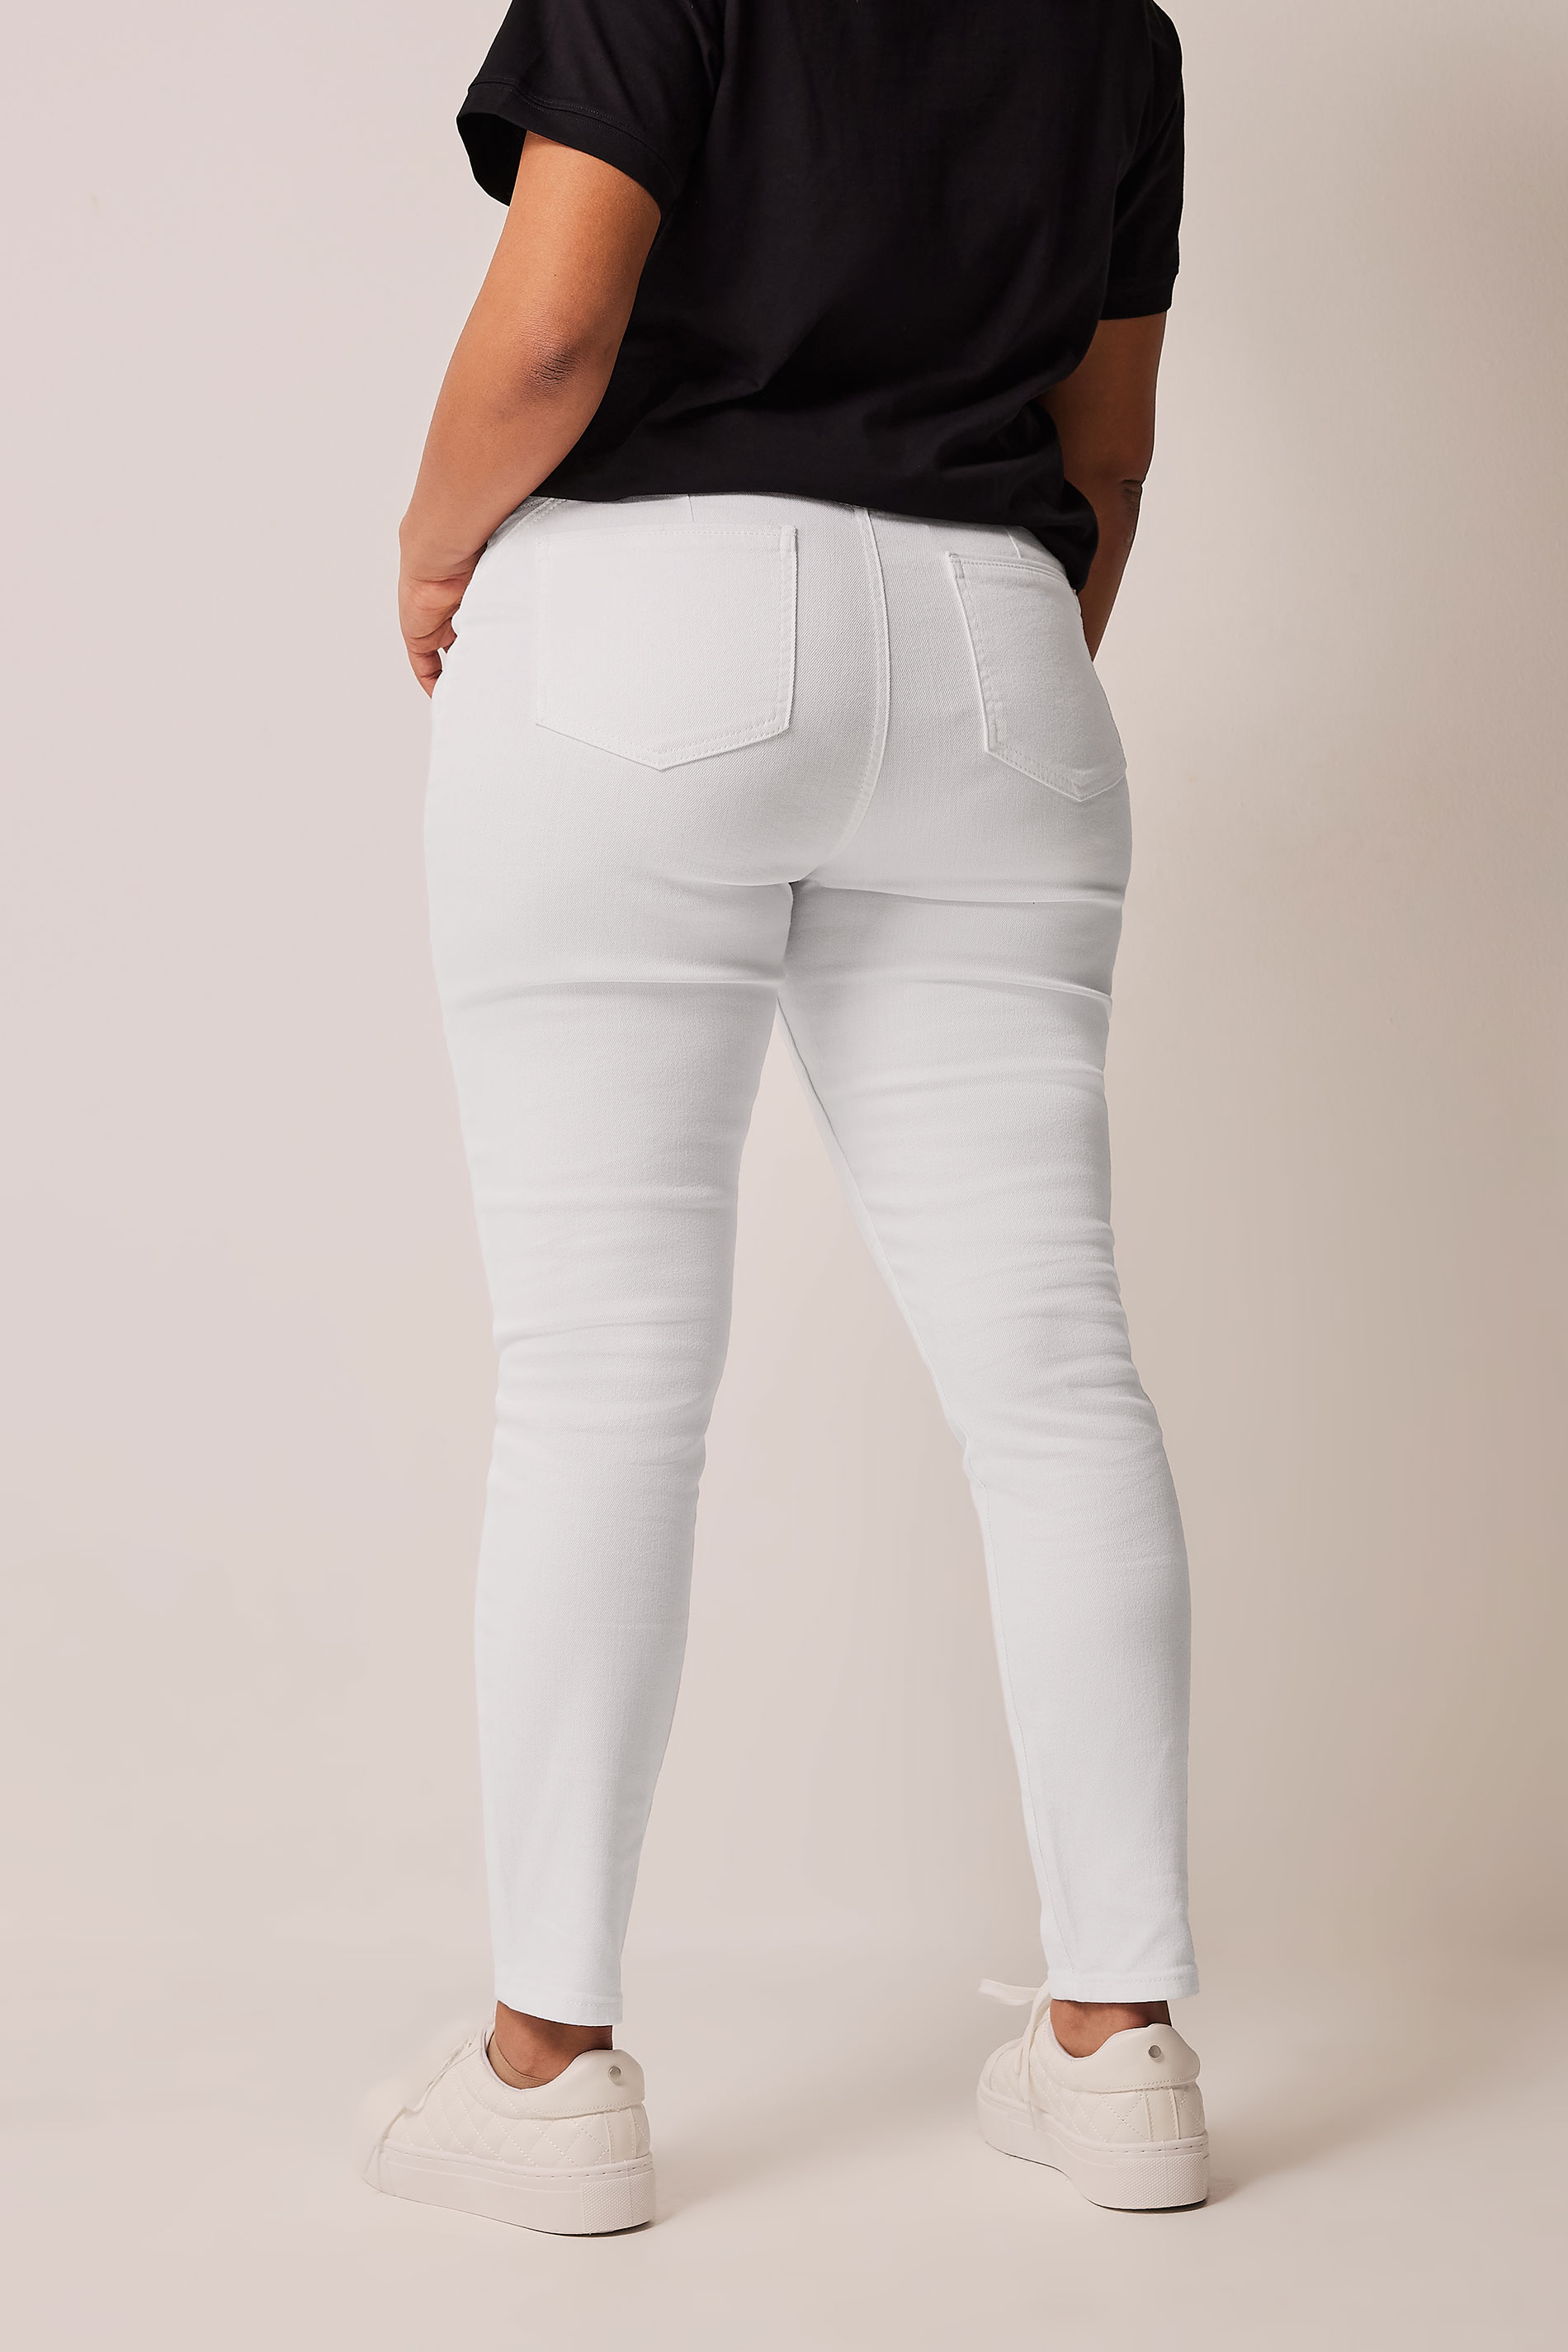 EVANS Plus Size White Shaper Contour Jeans | Evans 3